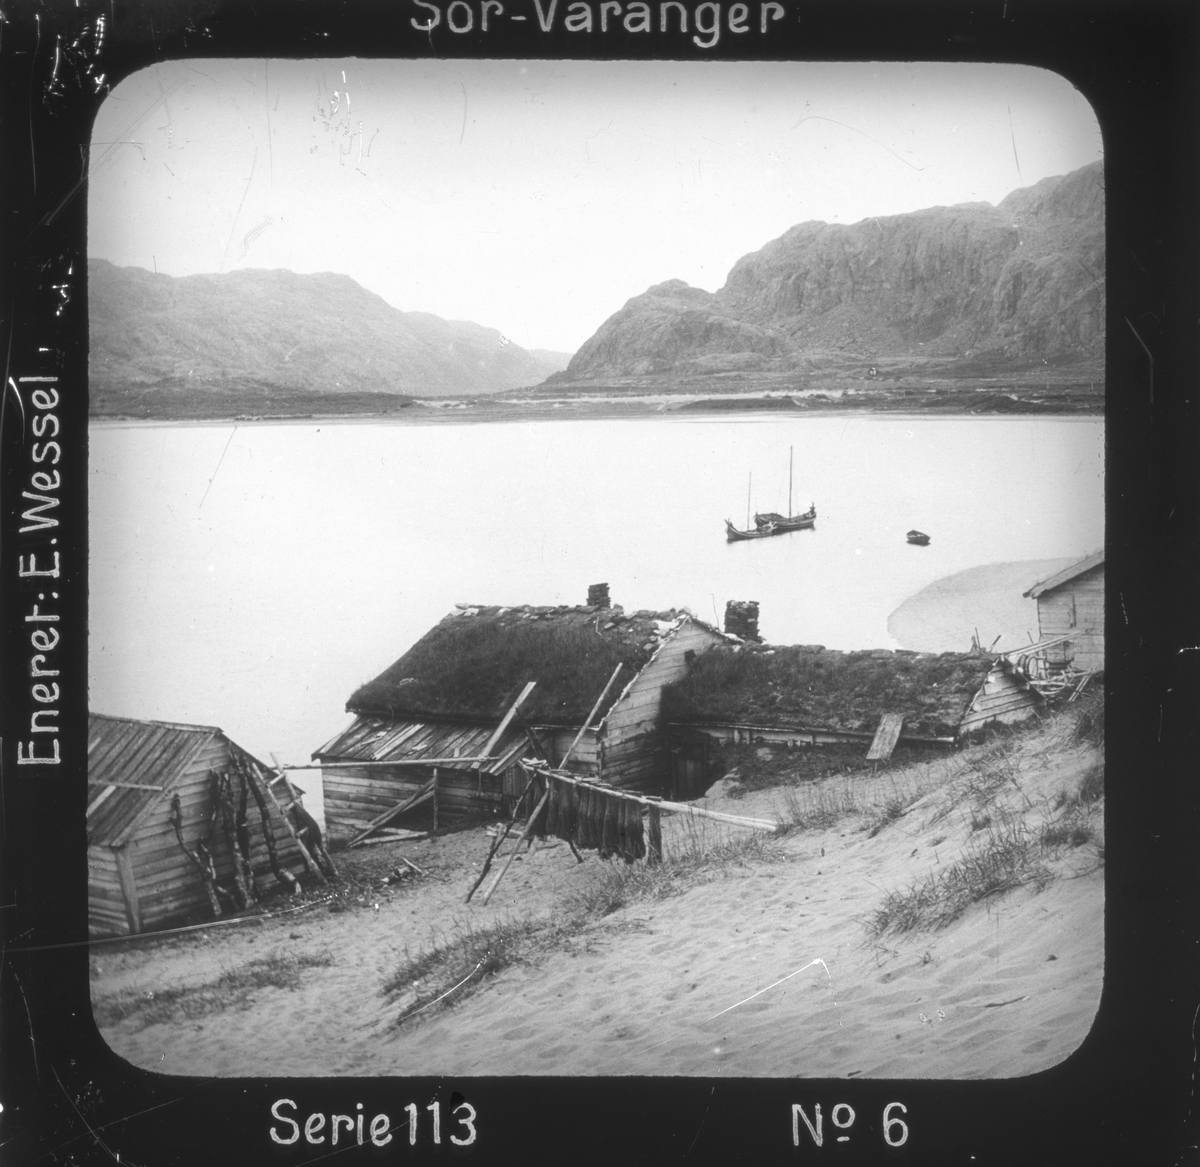 Grense Jakobselv, Sør-Varanger, Finnmark, ved Jakobsviken. I forgrunnen gårdsbebyggelse, fiskegarn tørkes.
Motivet har nr.6 i lysbildeforedraget kalt  "I lappernes land - Sør-Varanger", utgitt i Nerliens Lysbilledserier, serie nr 113. 